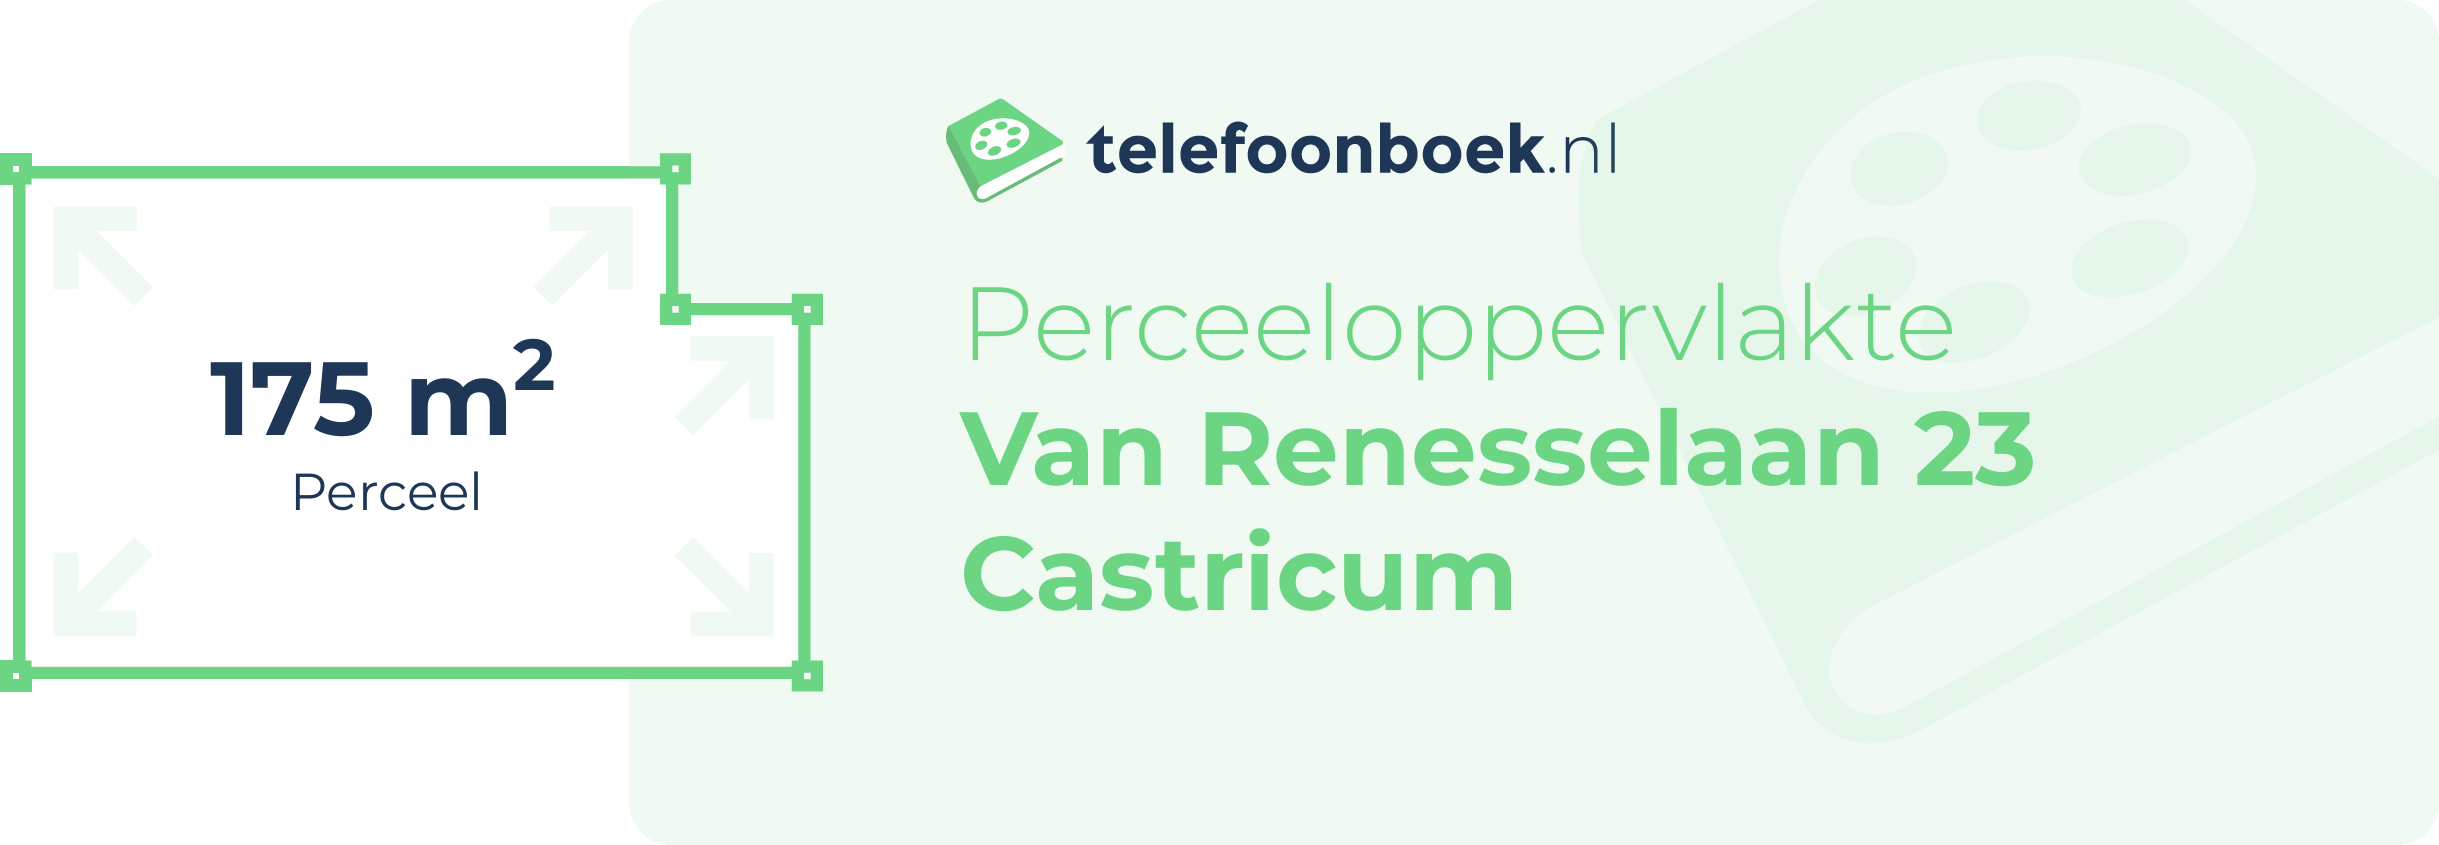 Perceeloppervlakte Van Renesselaan 23 Castricum